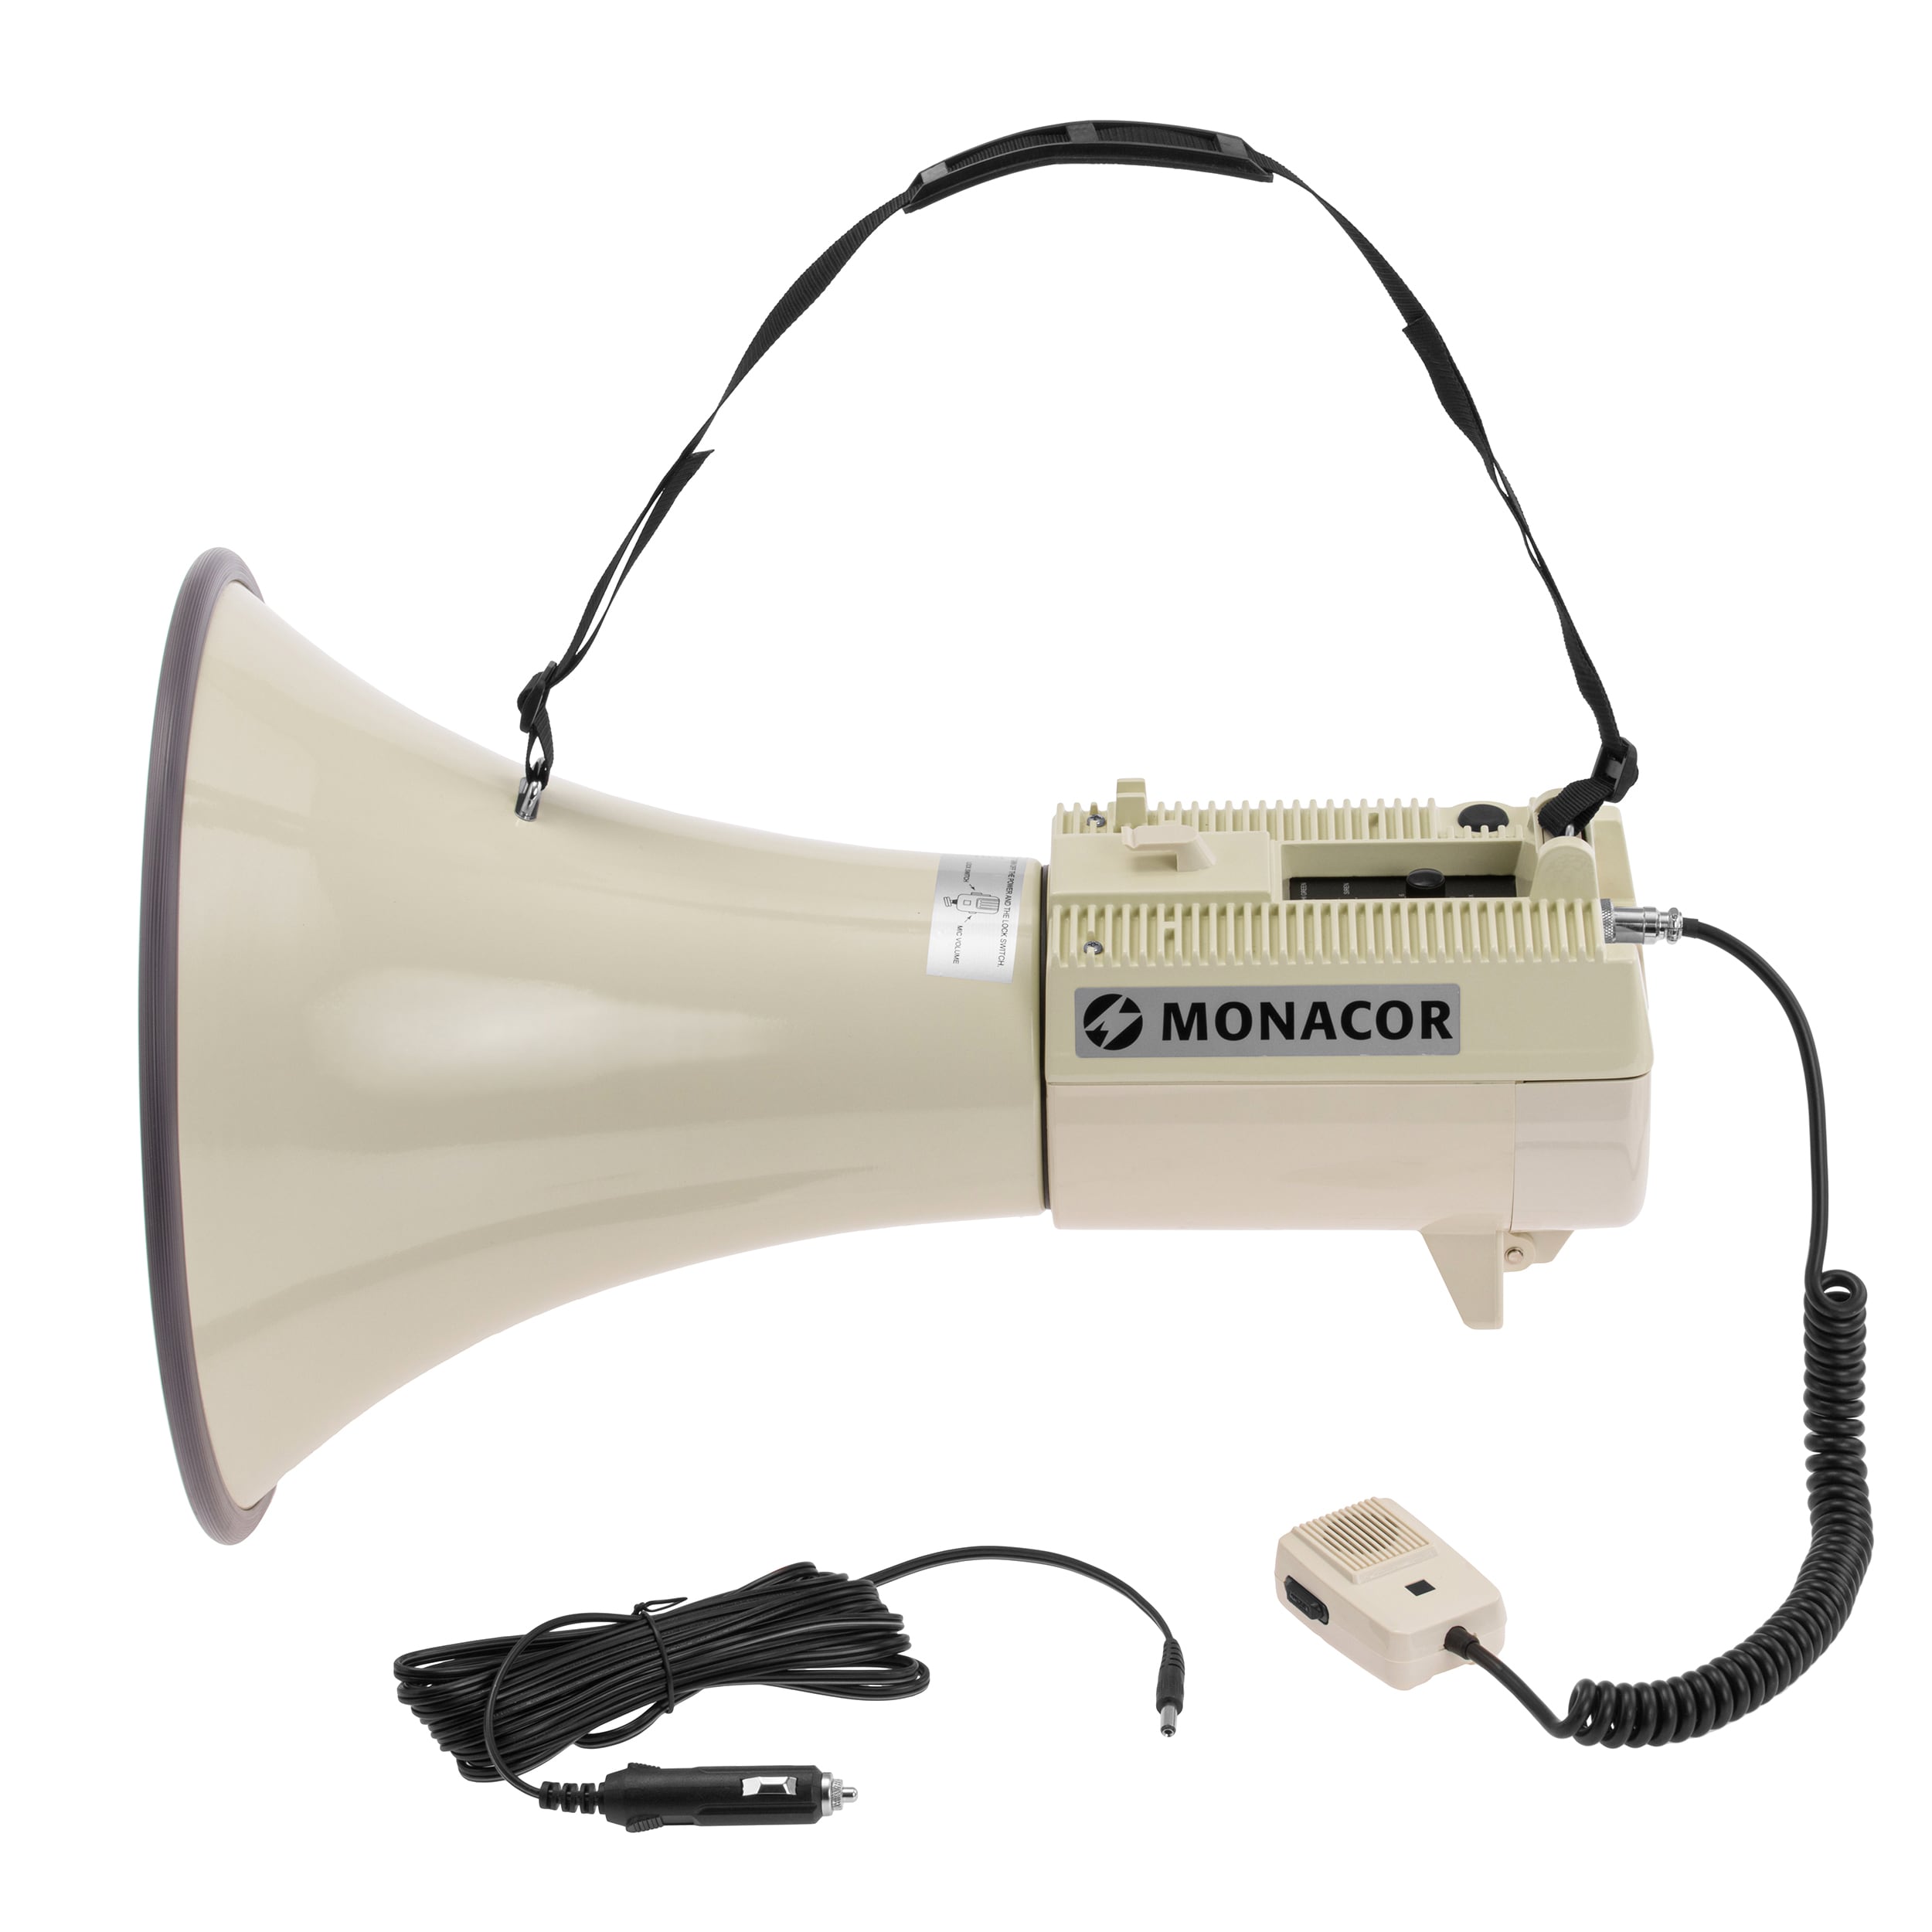 Megafon Monacor 45 W TM-45